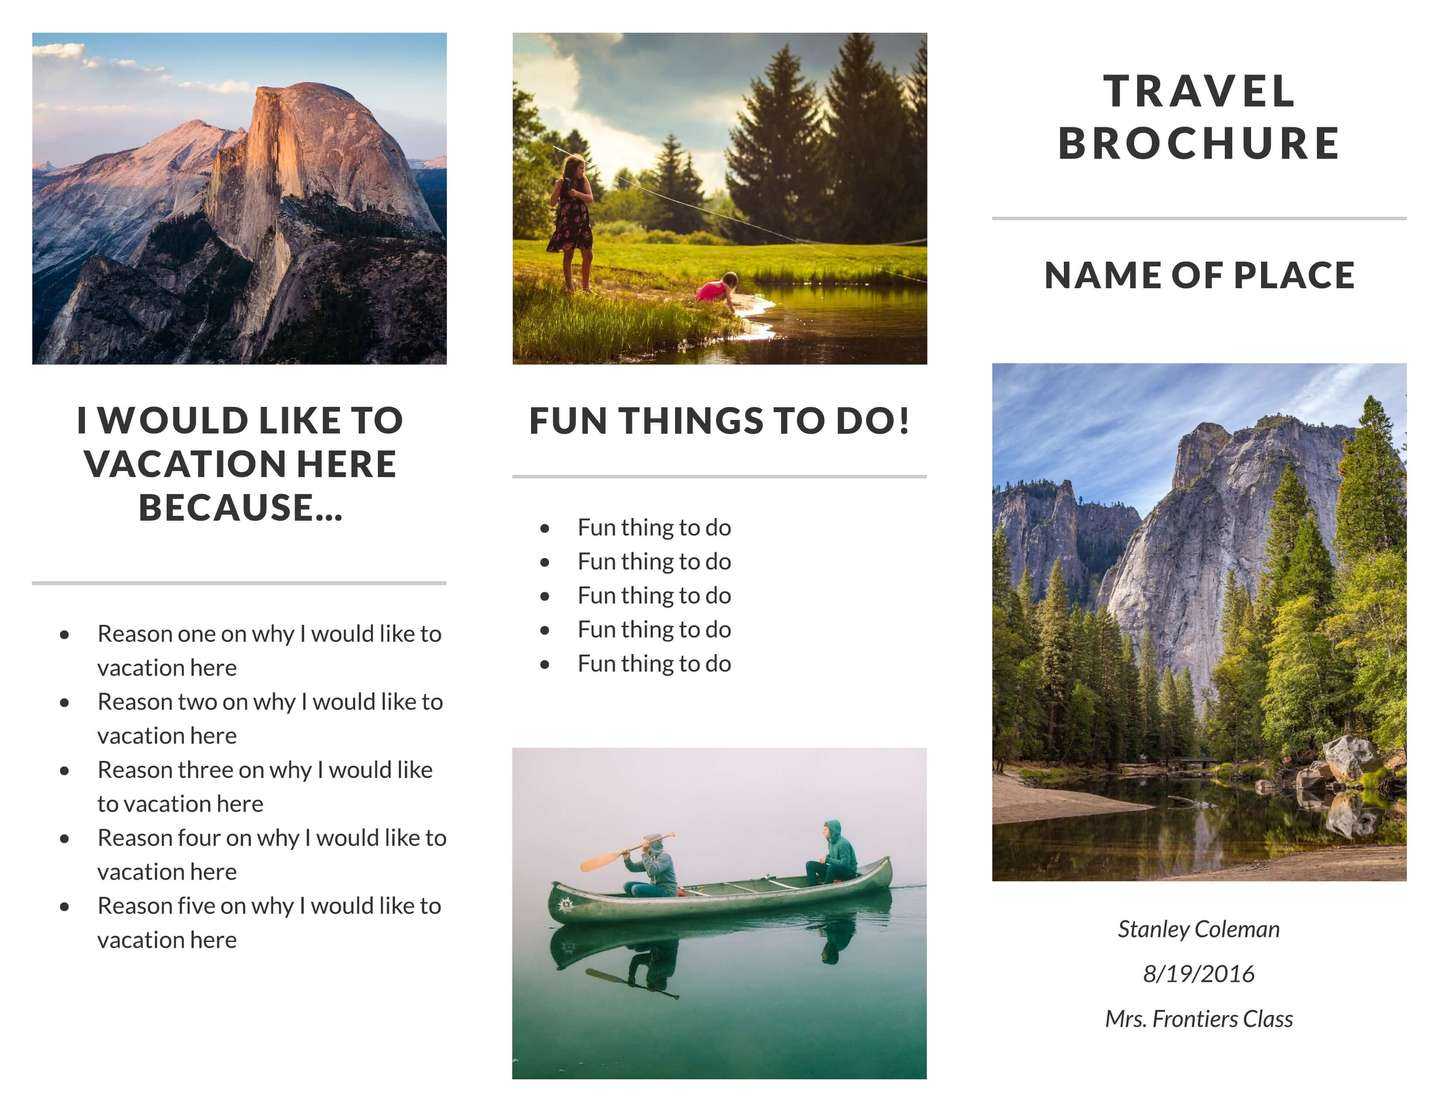 Recreation Travel Brochure Template | Lucidpress Within Travel Brochure Template For Students